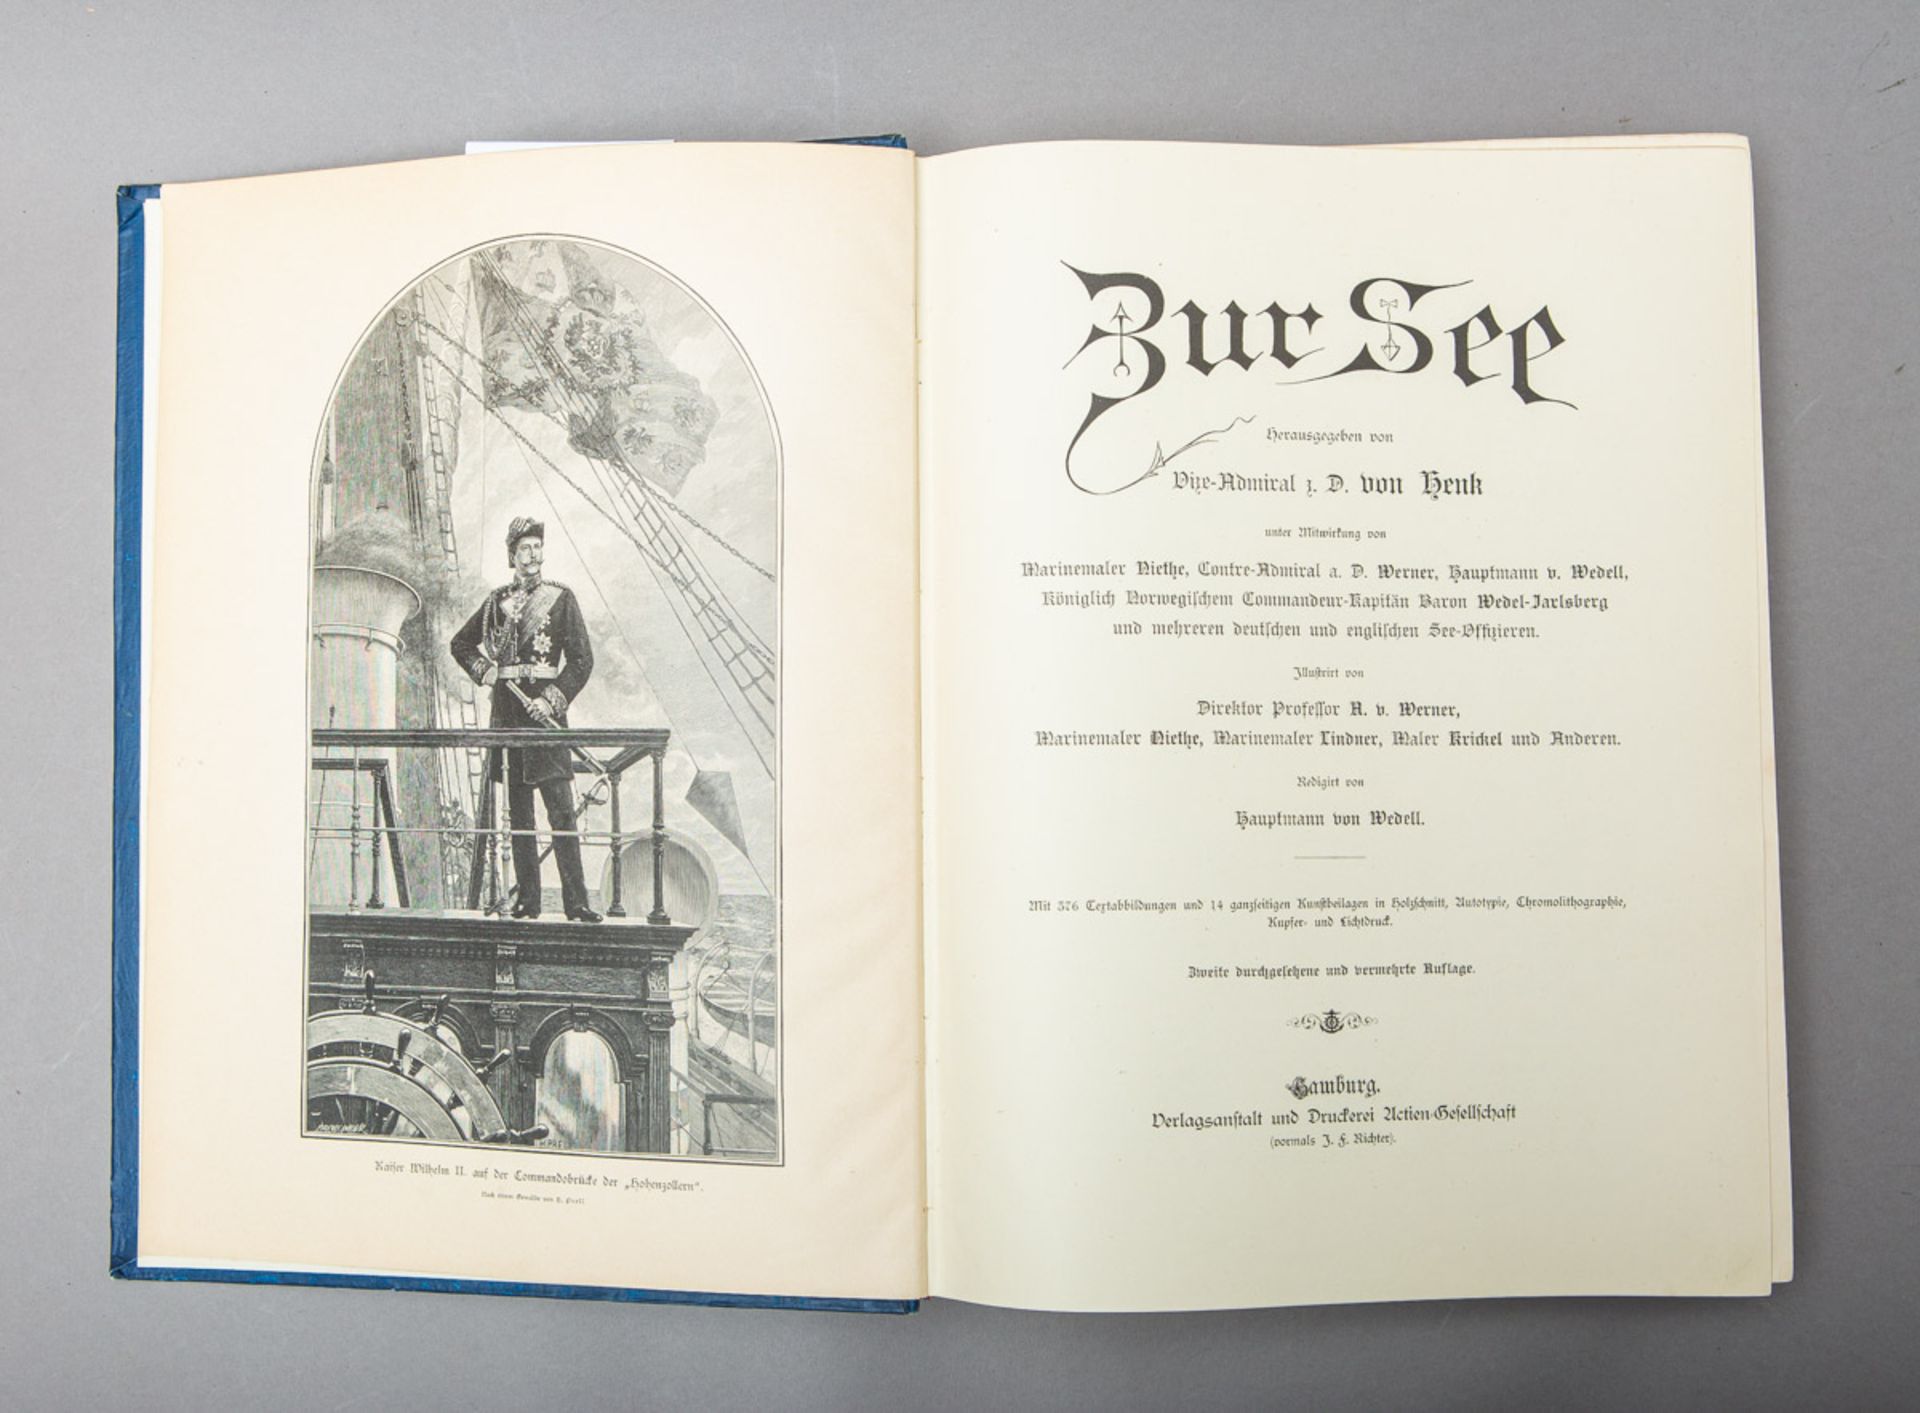 von Henk, D. - Vize-Admiral (Hrsg.), "Zur See" (um 1880/90) - Image 2 of 2